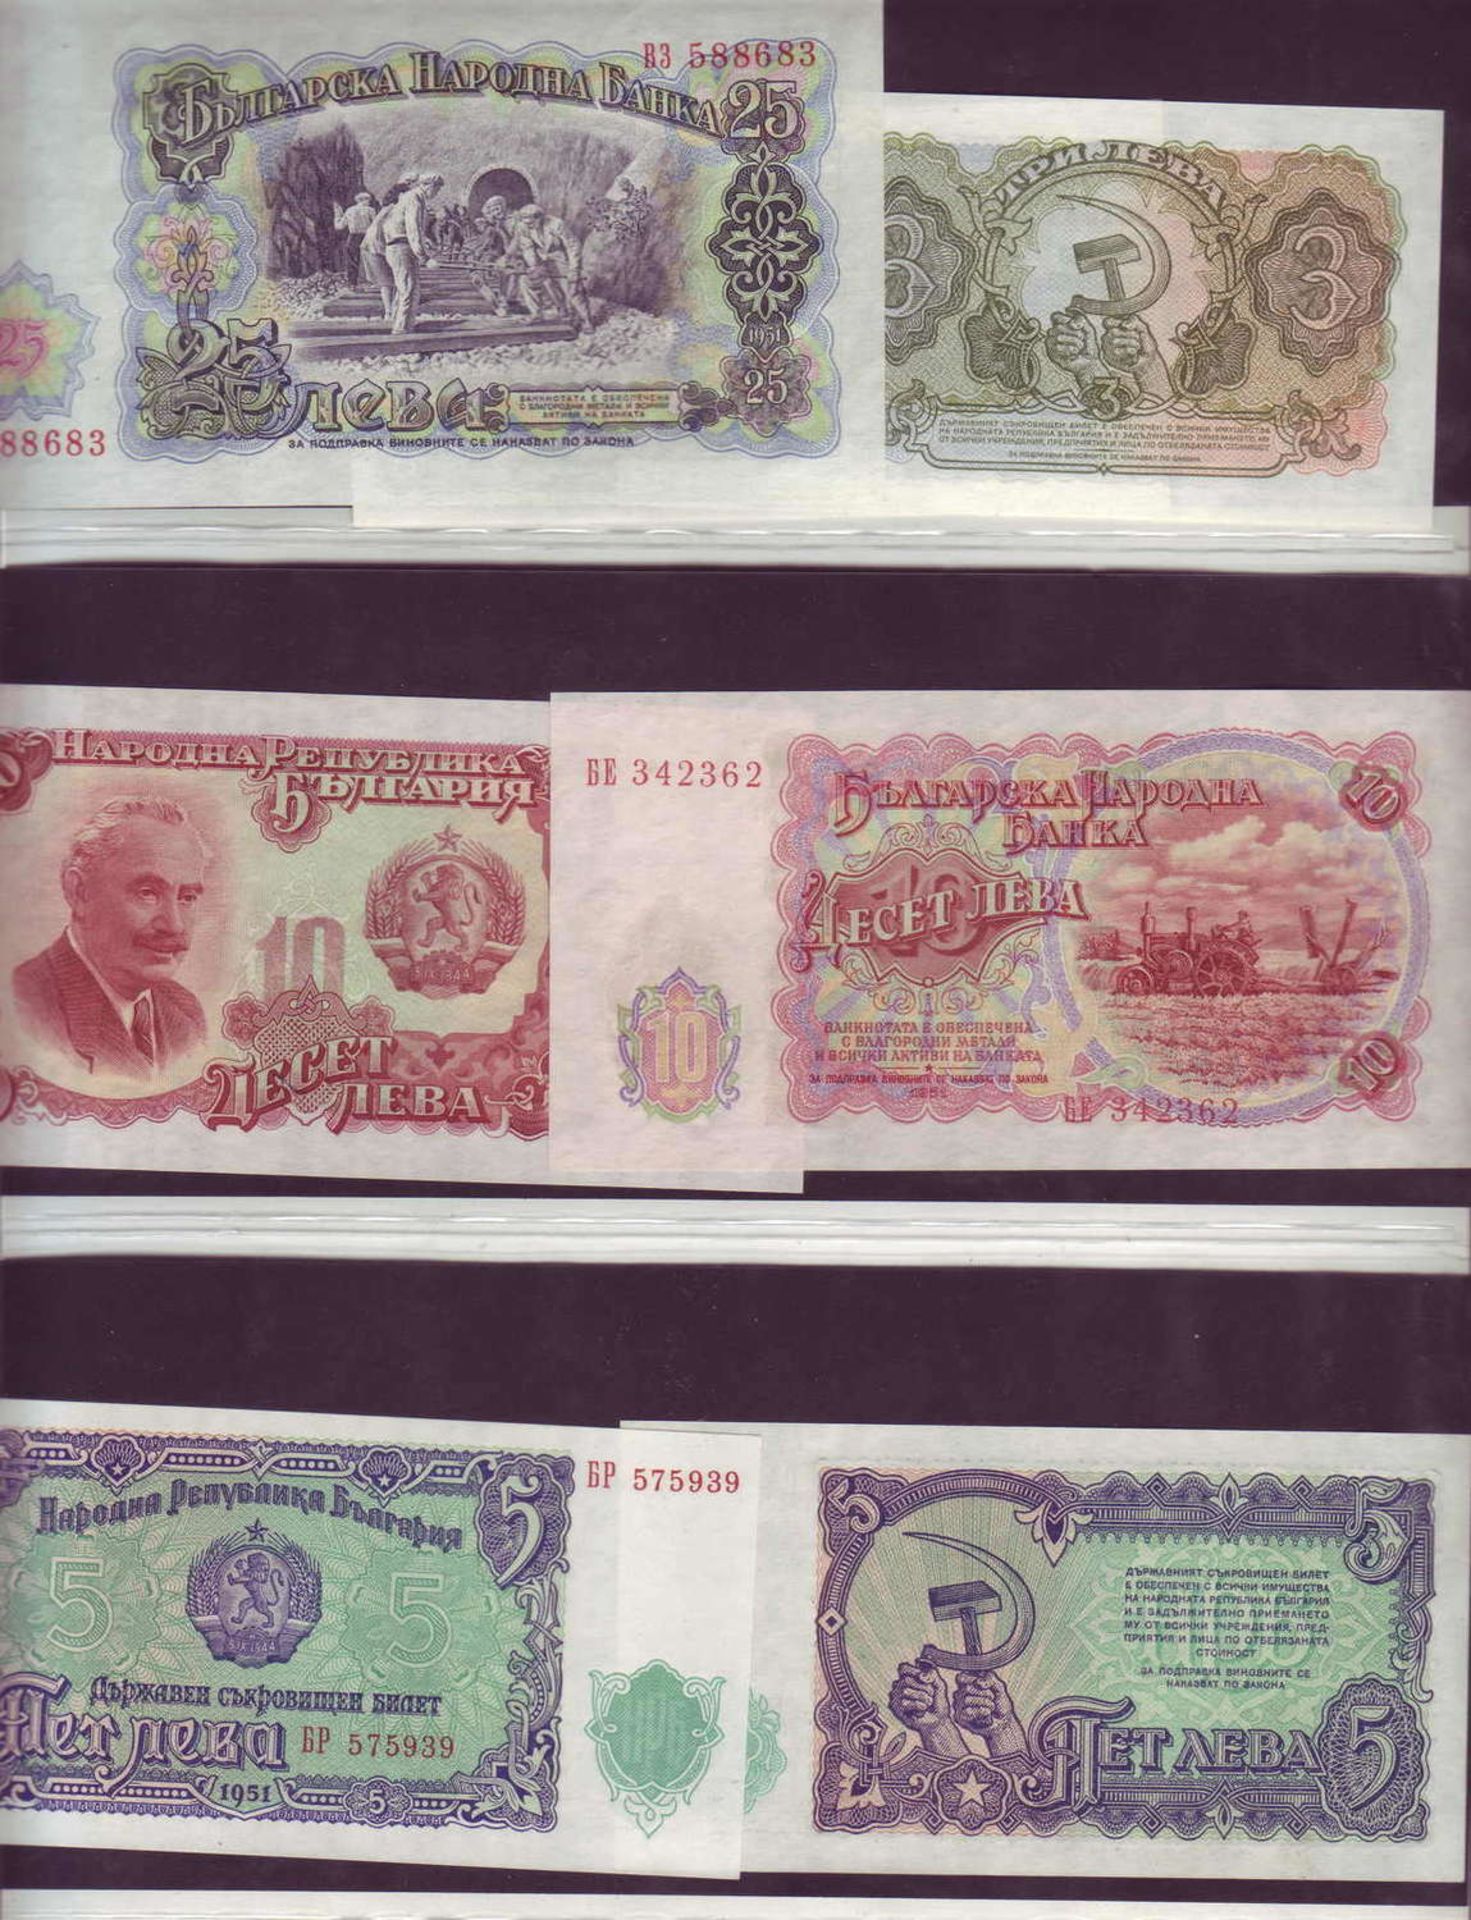 Bulgarien 1951, kleine Lot Banknoten, bestehend aus: 1 x 25 Lewa, 2 x 10 Lewa, 2 x 5 Lewa und 2 x